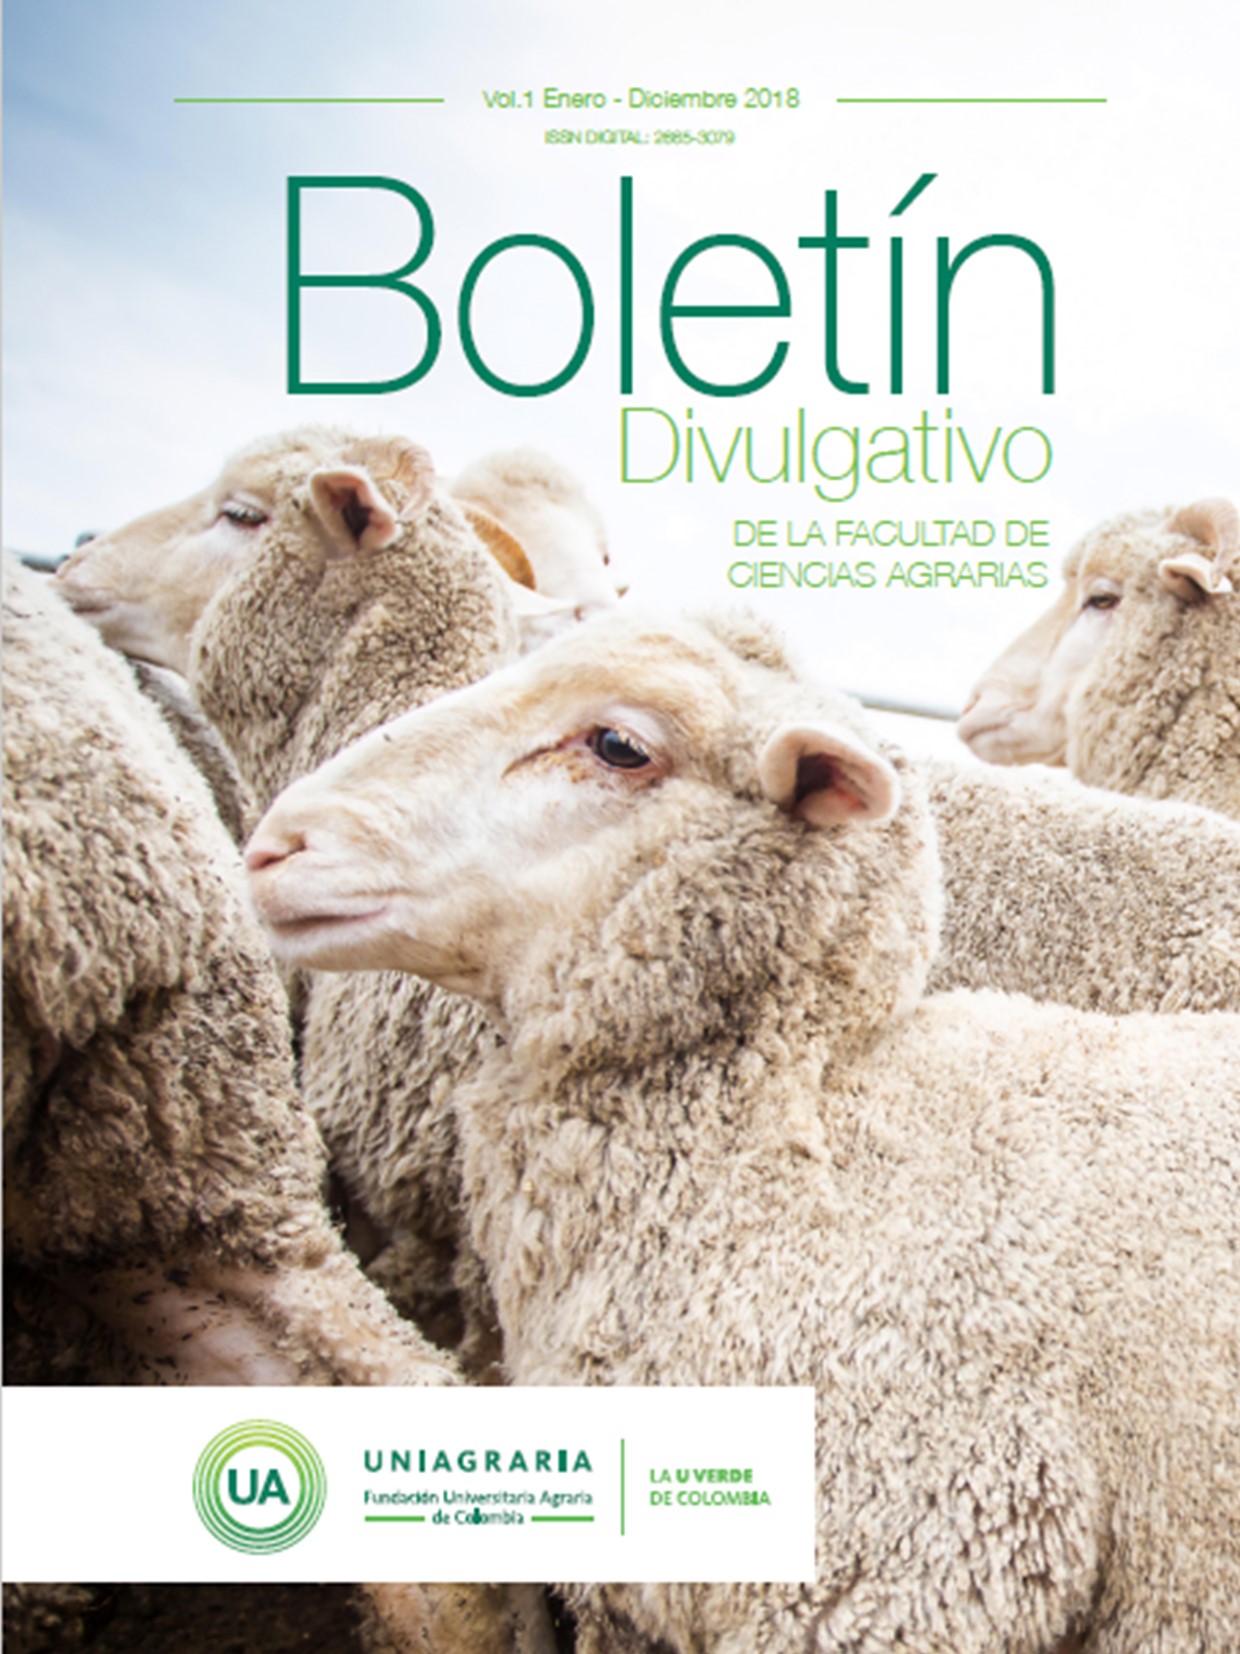 Boletín Divulgativo Facultad de Ciencias Agrarias UNIAGRARIA Vol.1 Enero – Diciembre 2018